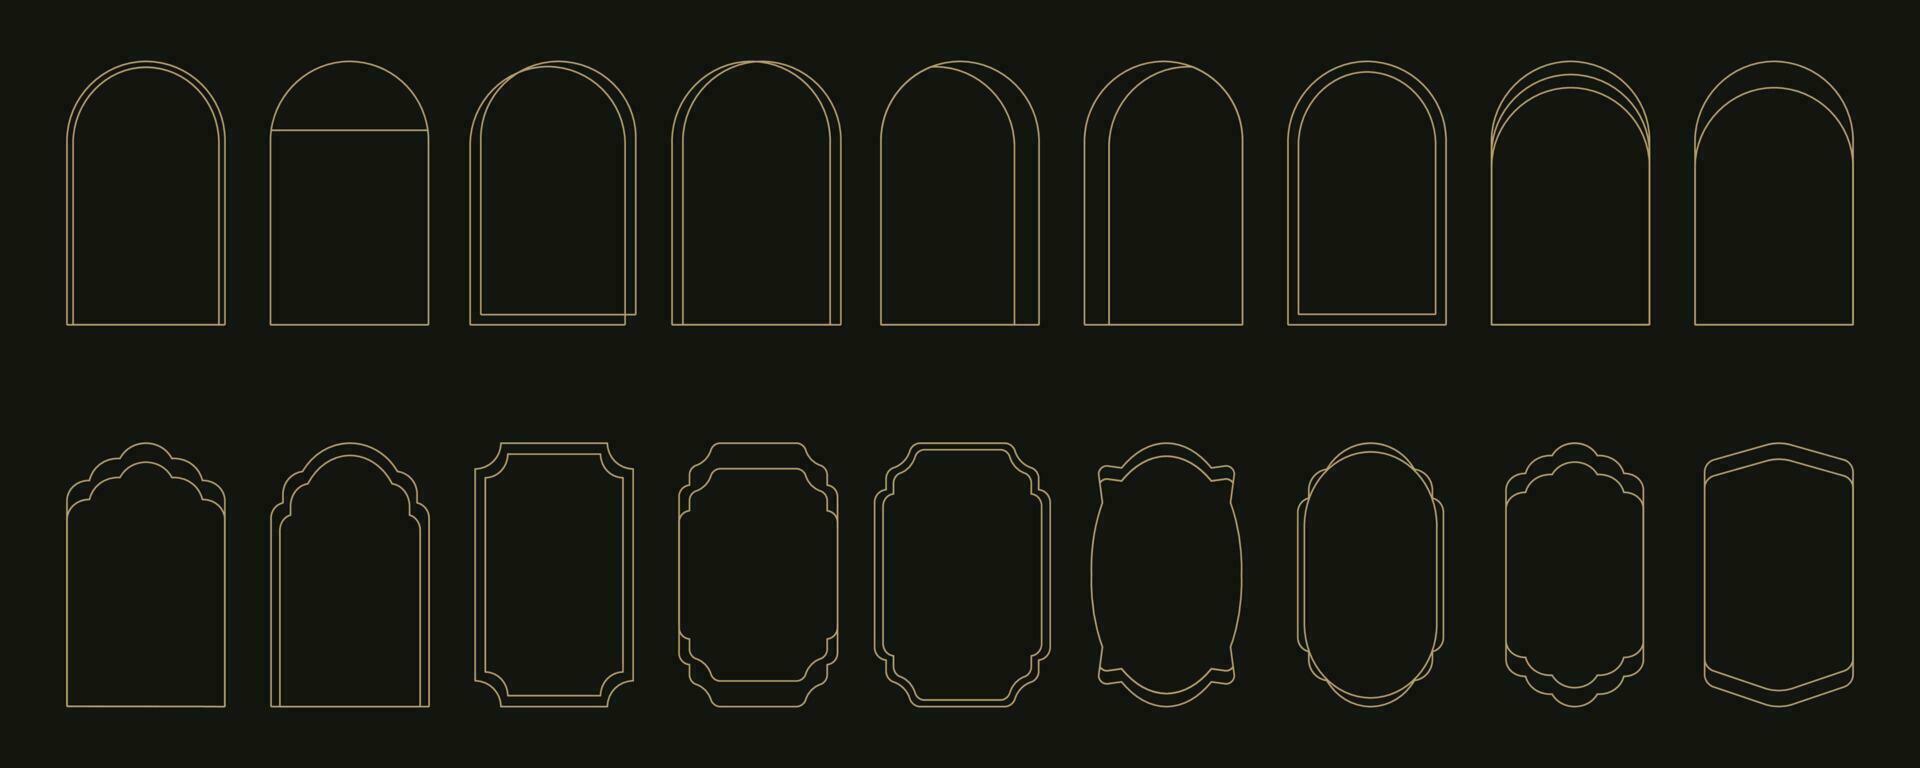 conjunto do minimalista linear arco quadros dentro na moda moderno minimalista ano 2000 estético estilo. abstrato vetor Projeto esboço elementos - arco, geométrico Formato para bandeira, social meios de comunicação, poster.